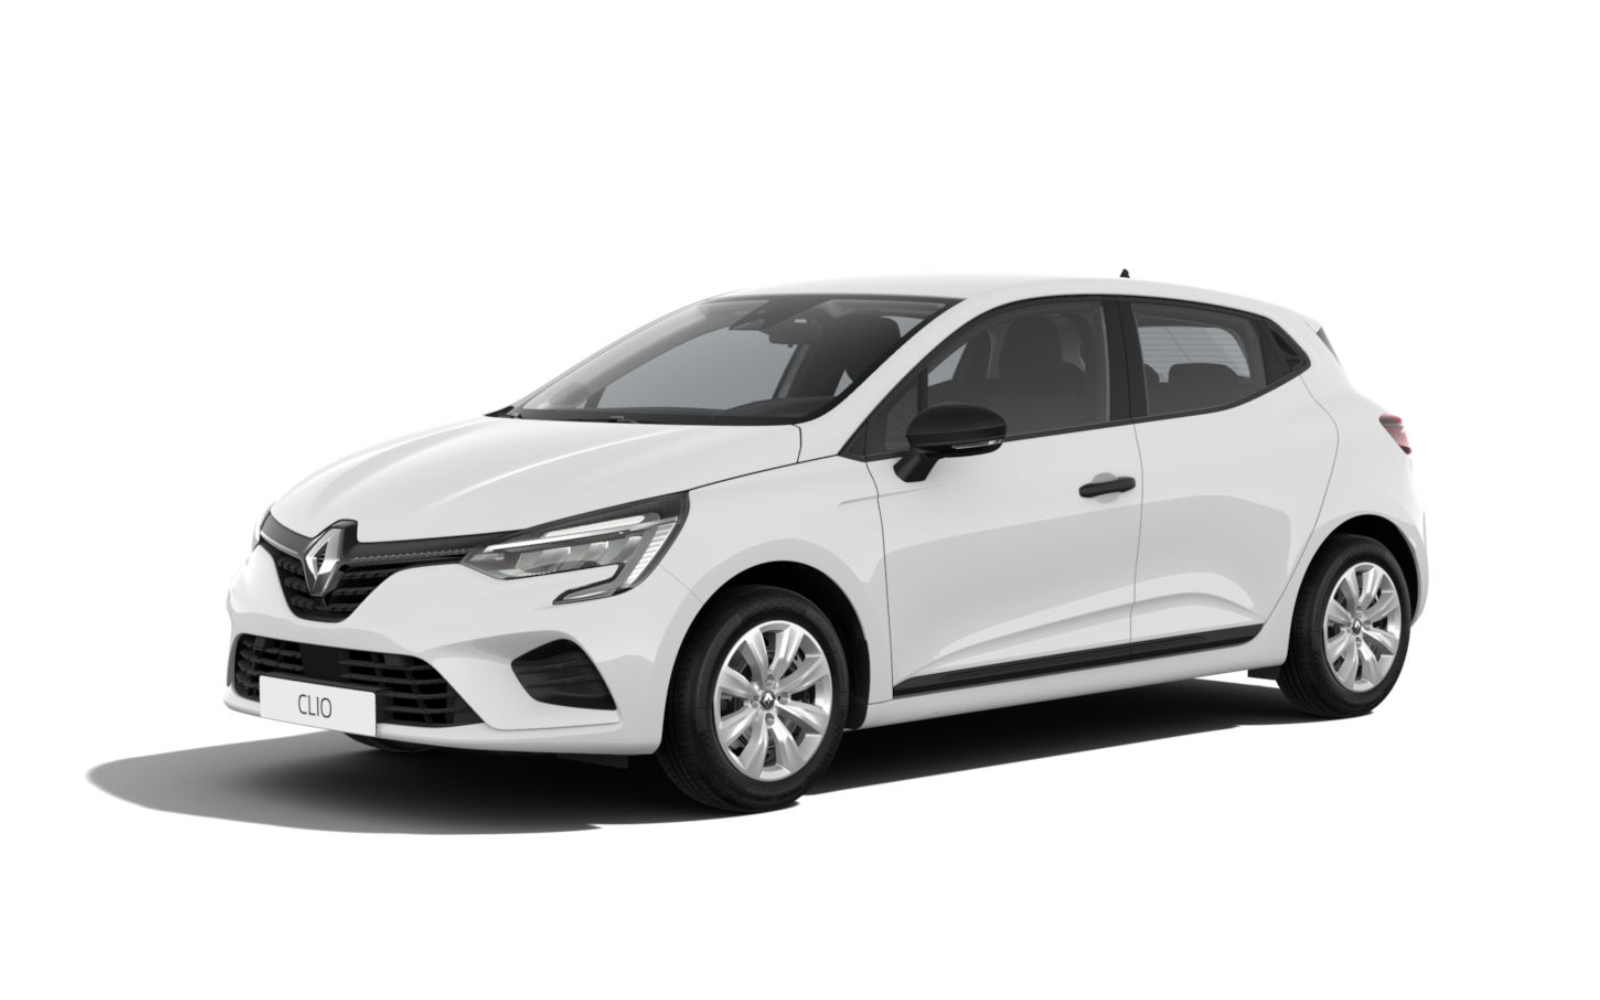 Necklet Rijke man dump Duik in de prijslijst: Renault Clio, wat kosten de opties?